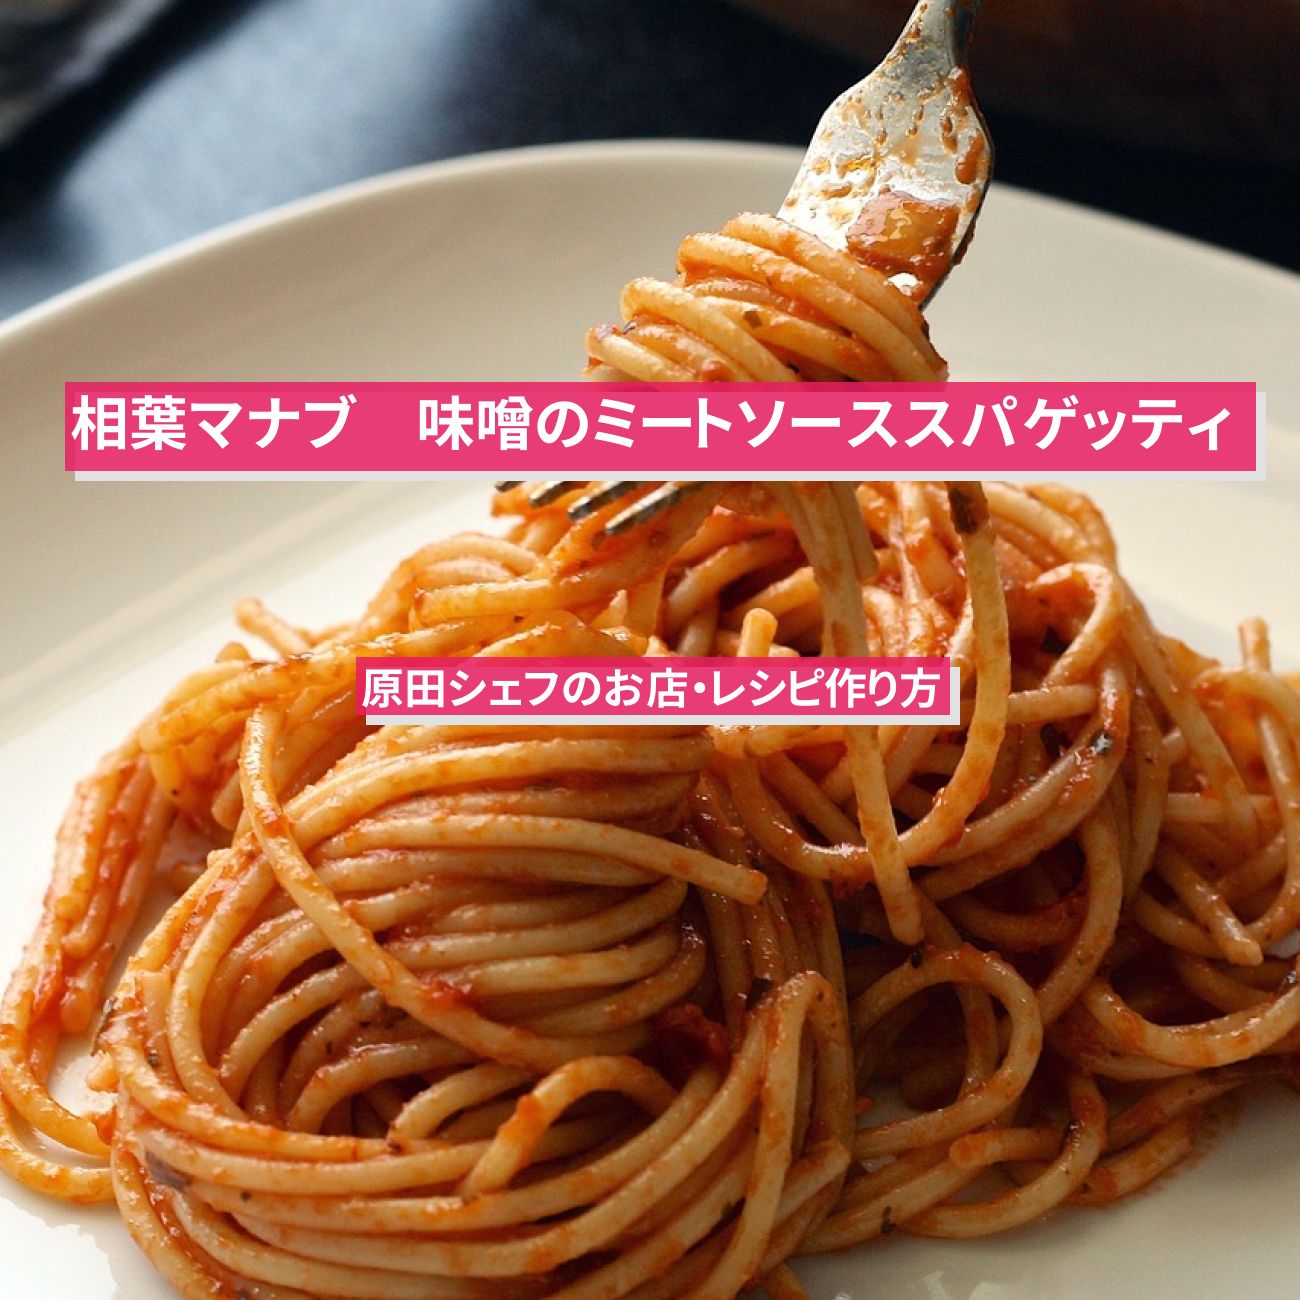 【相葉マナブ】『味噌のミートソーススパゲッティ』原田シェフのお店・レシピ作り方